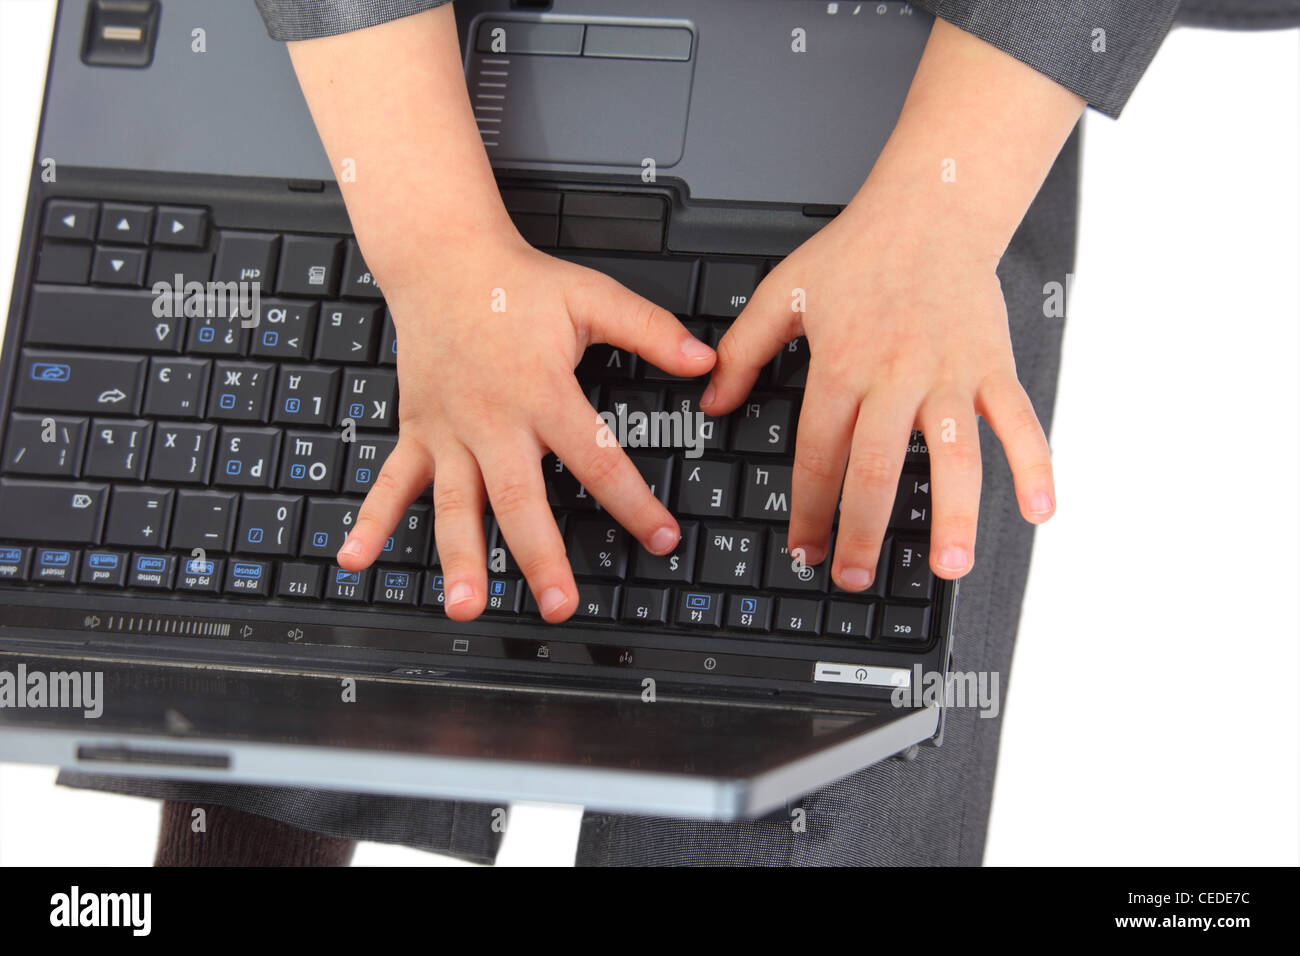 Laptpop enfantin les mains sur le clavier. Banque D'Images